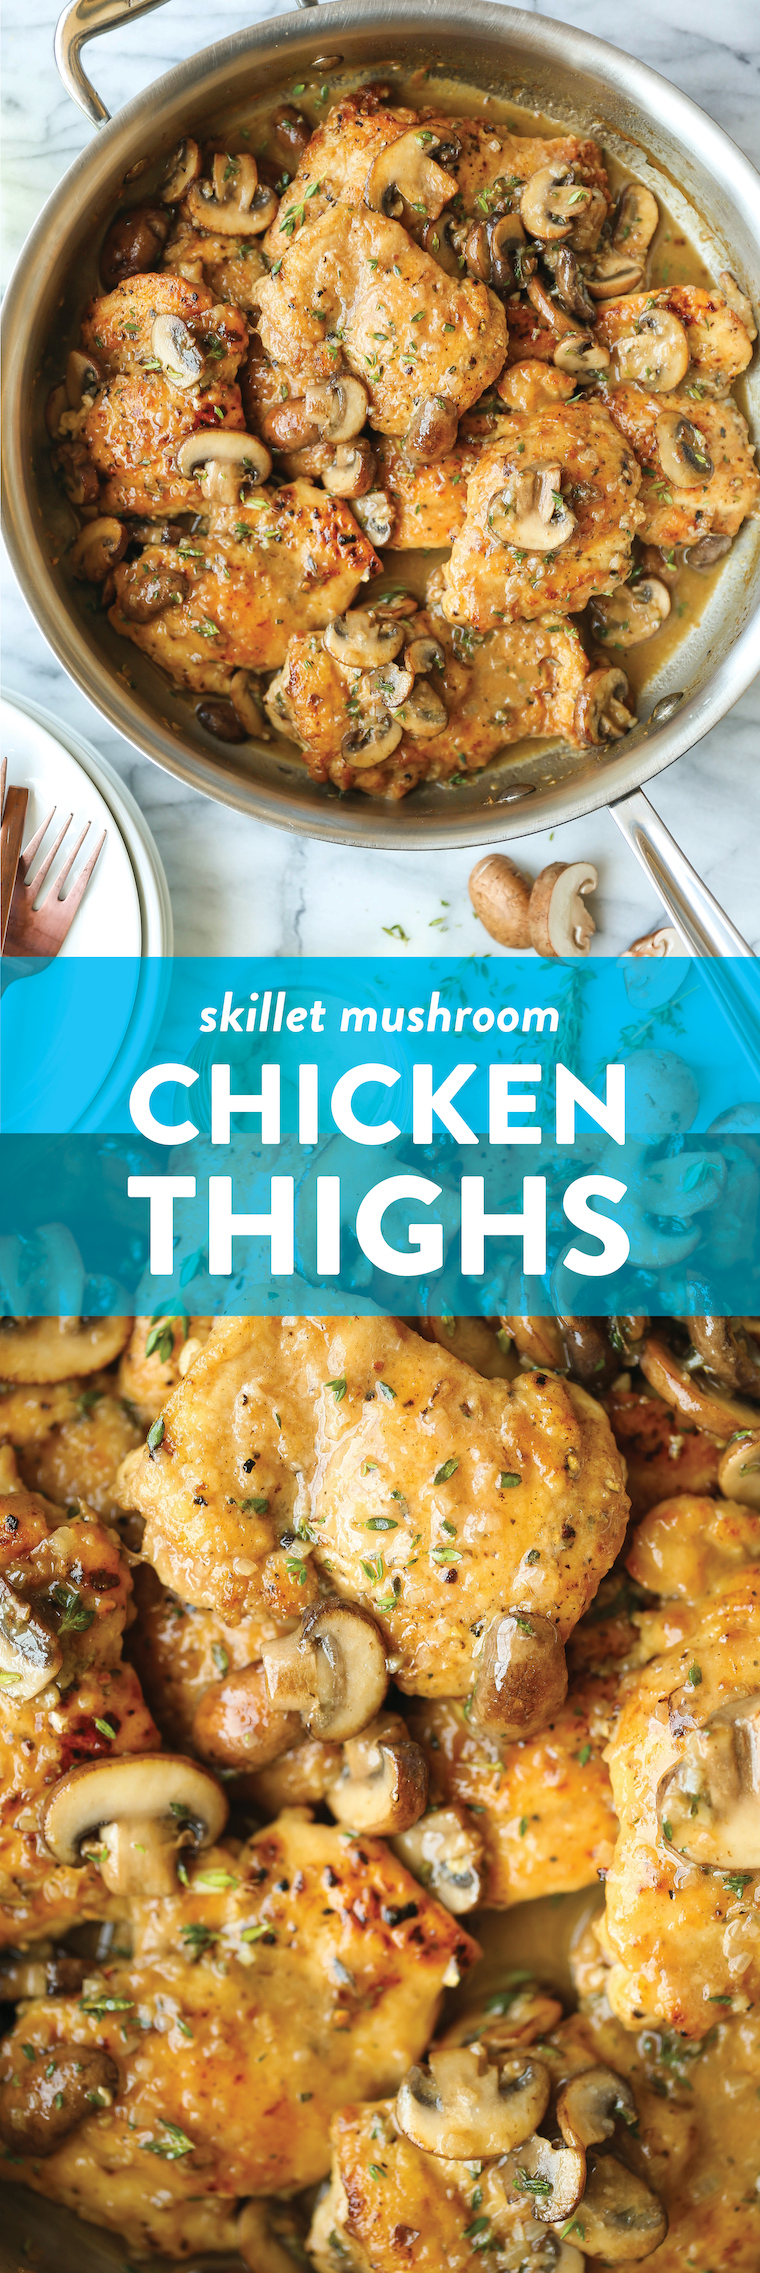 Skillet Mushroom Chicken Thighs - Golden brown, super juicy, tender chicken smothered in a garlicky, mushroom butter sauce. 30 min. So quick, so so good!